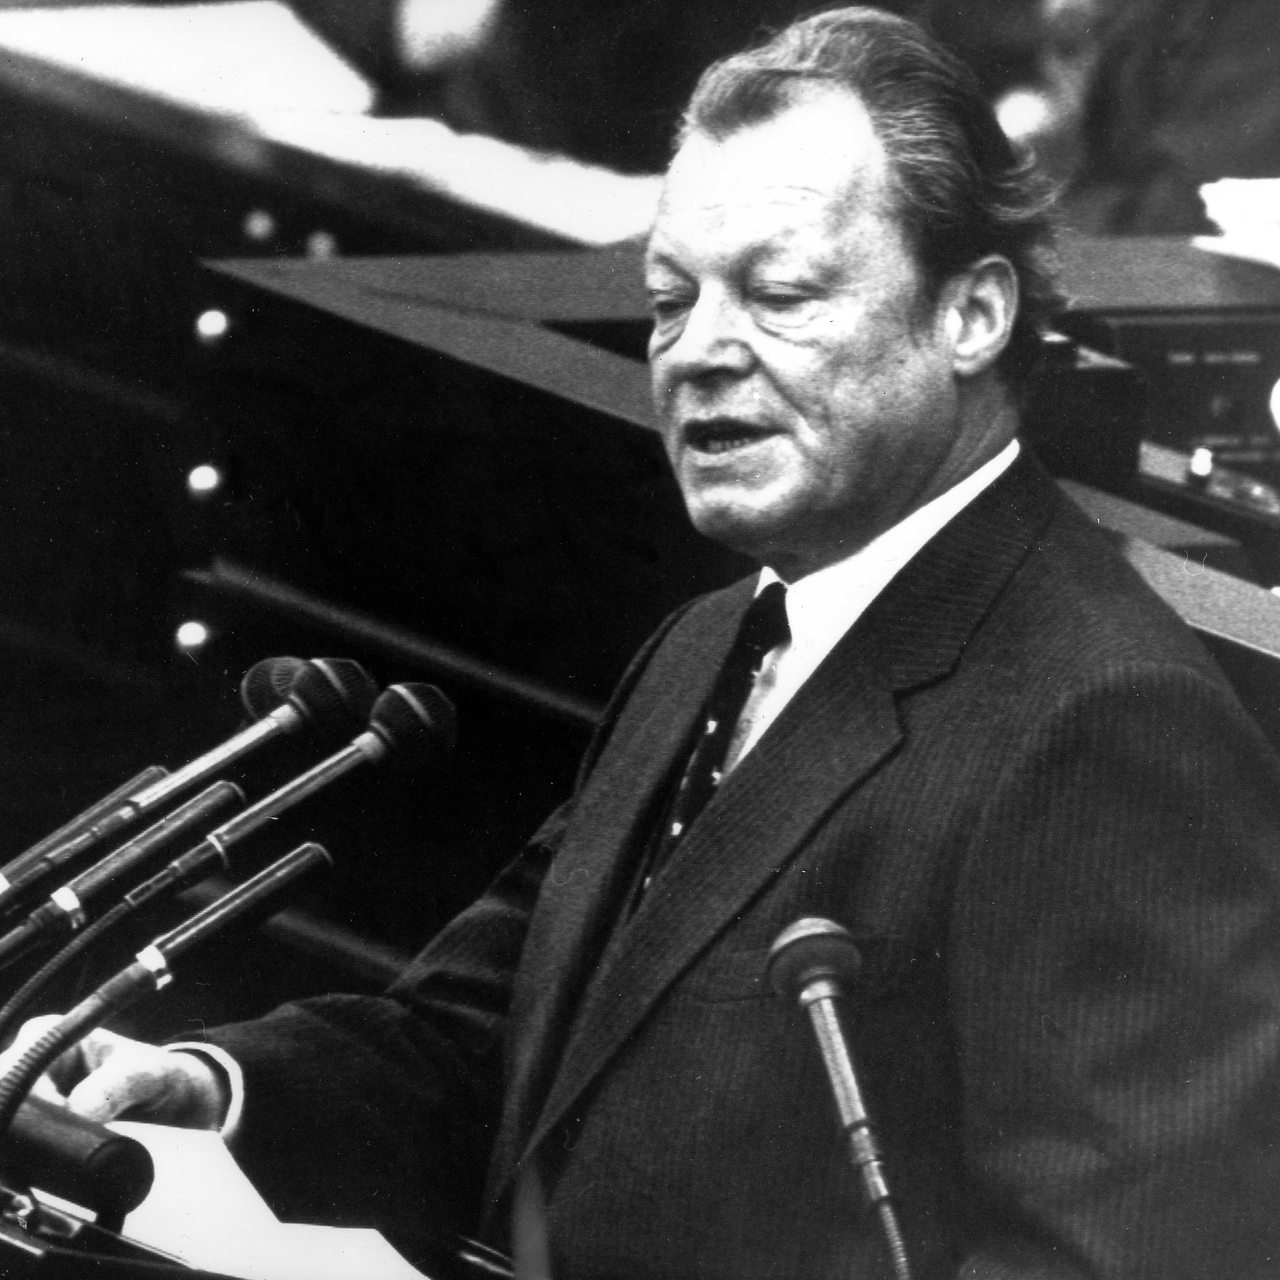 Bundeskanzler Willy Brandt stellt am 20.09.1972 vor dem Bonner Bundestag die Vertrauensfrage. 